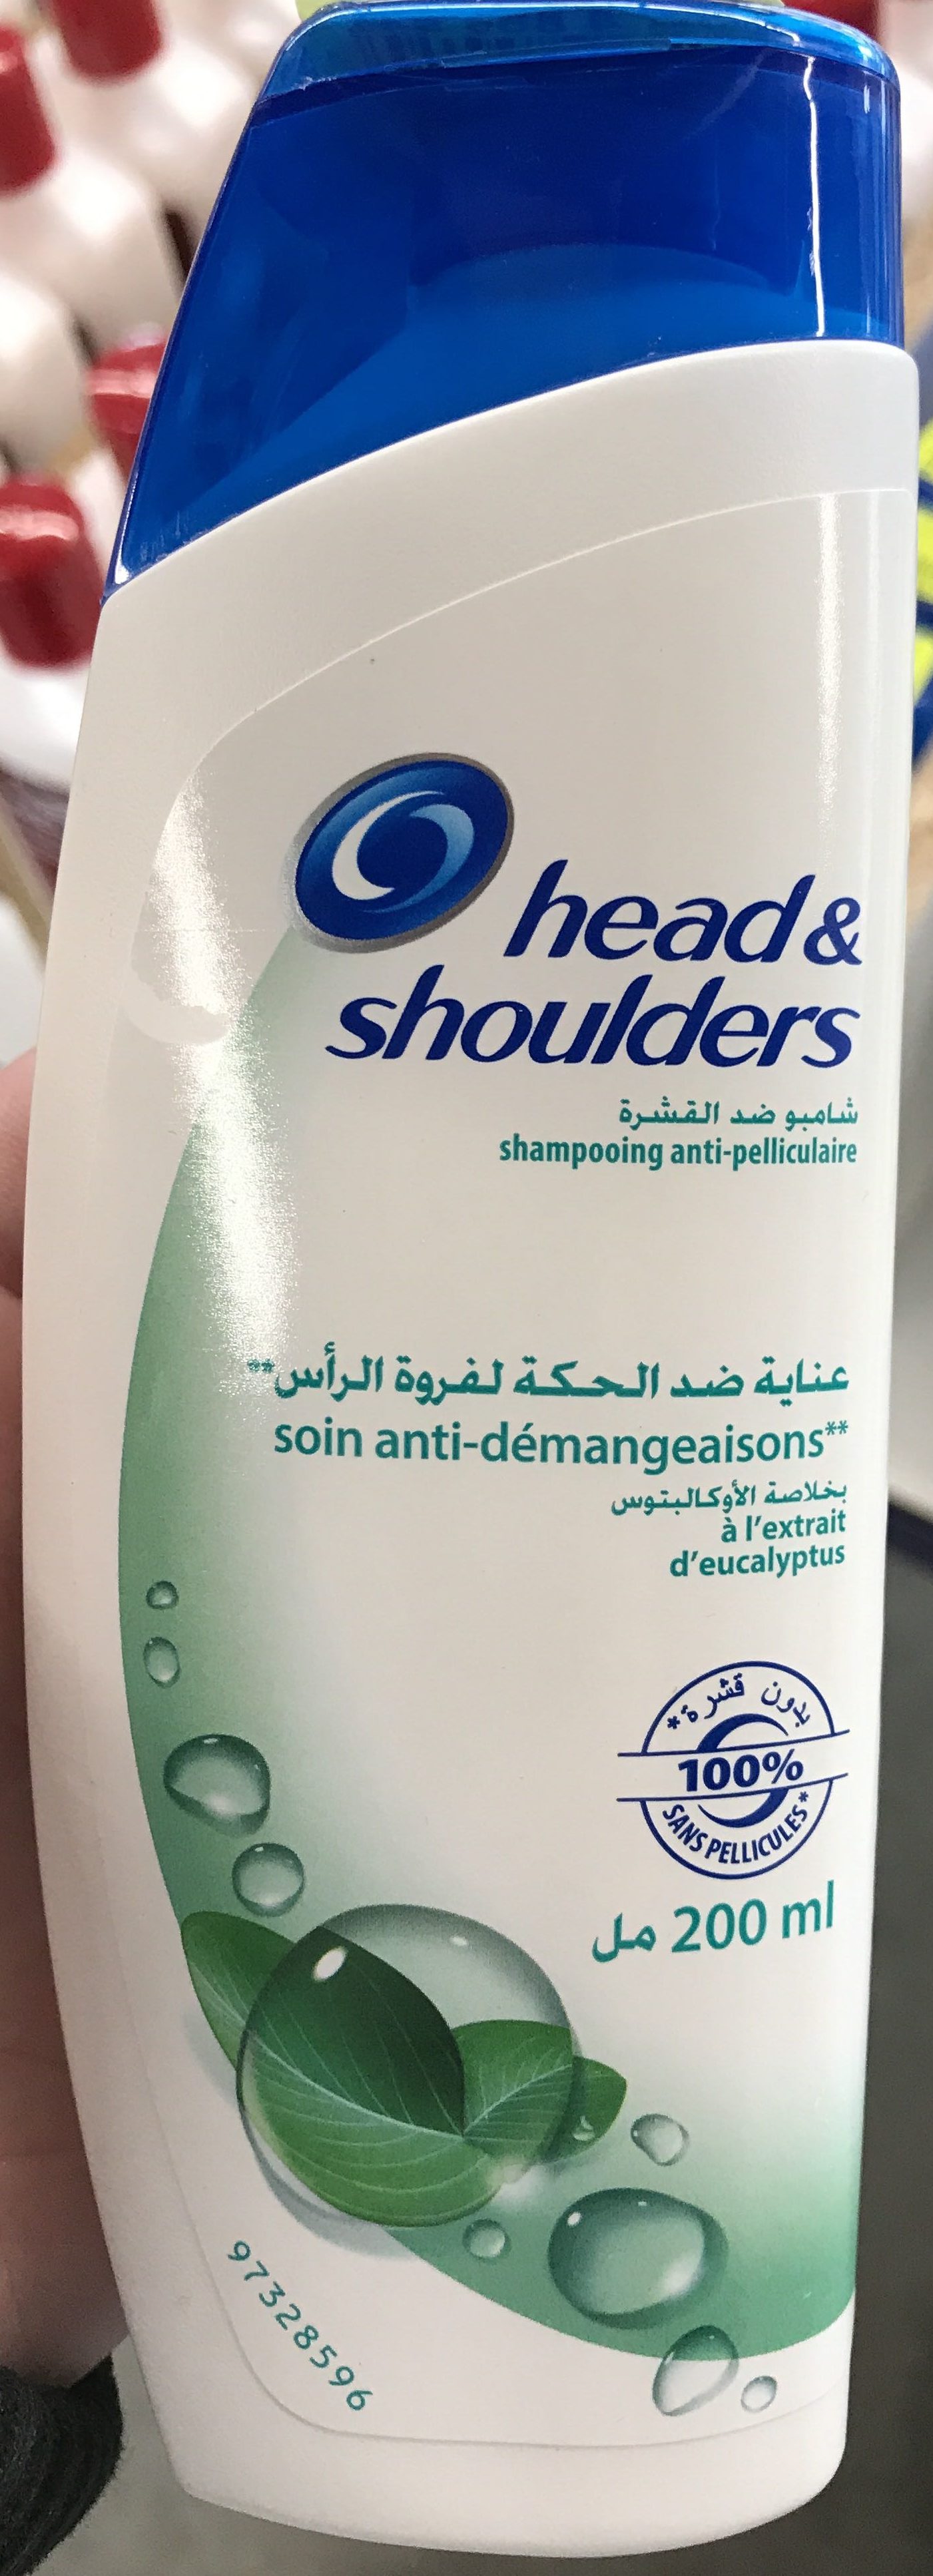 Shampooing anti-pelliculaire soin anti-démangeaisons à l'extrait d'eucalyptus - Produit - fr